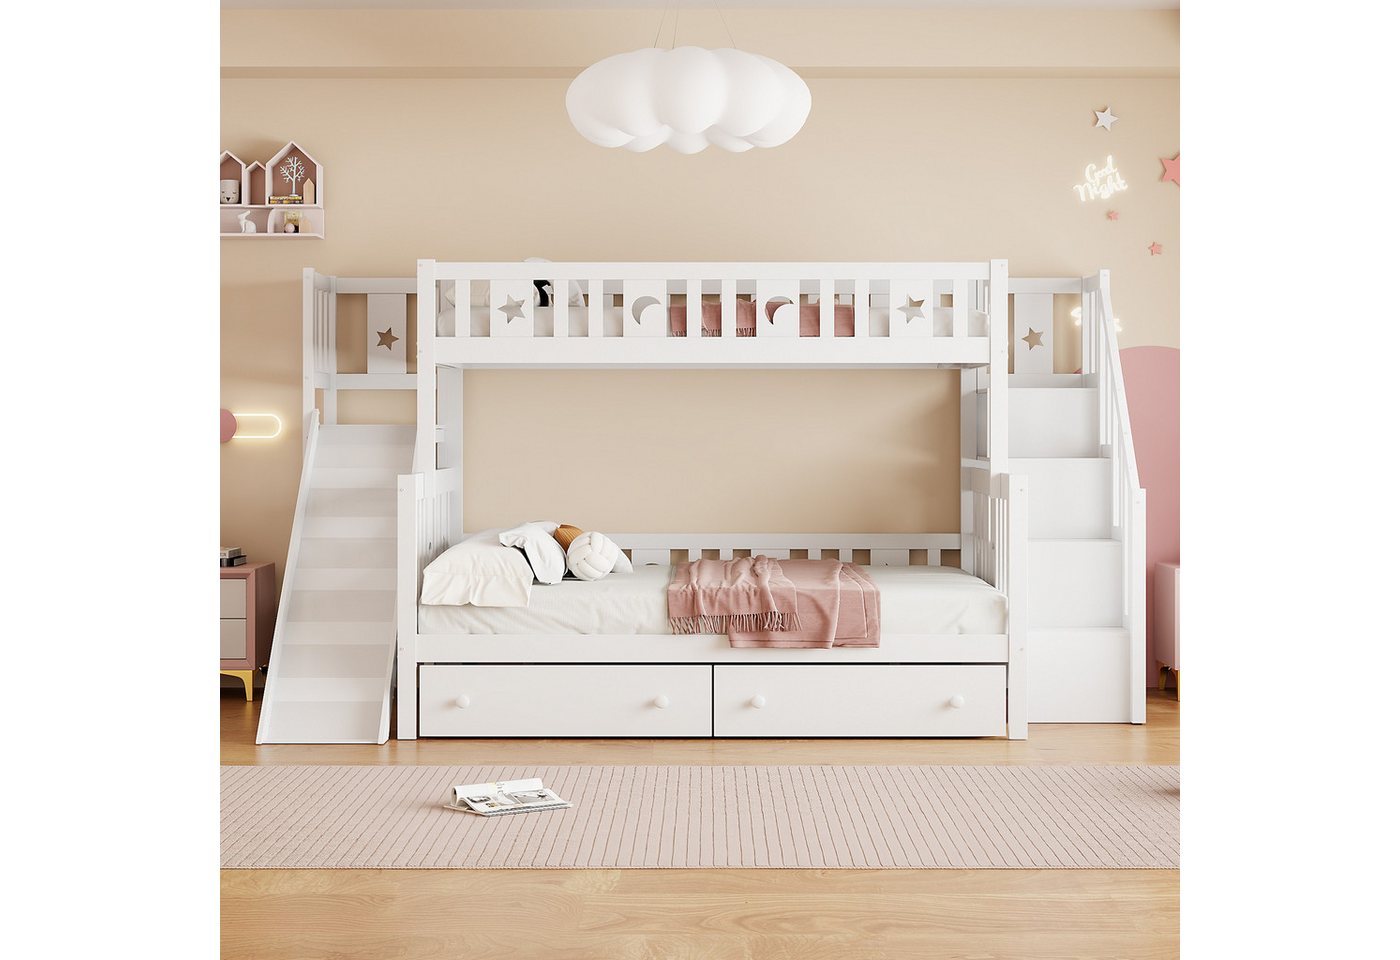 IDEASY Etagenbett Jugendbett, Kinderbett, weiß, 90*200/140*200 cm, mit Zaun günstig online kaufen